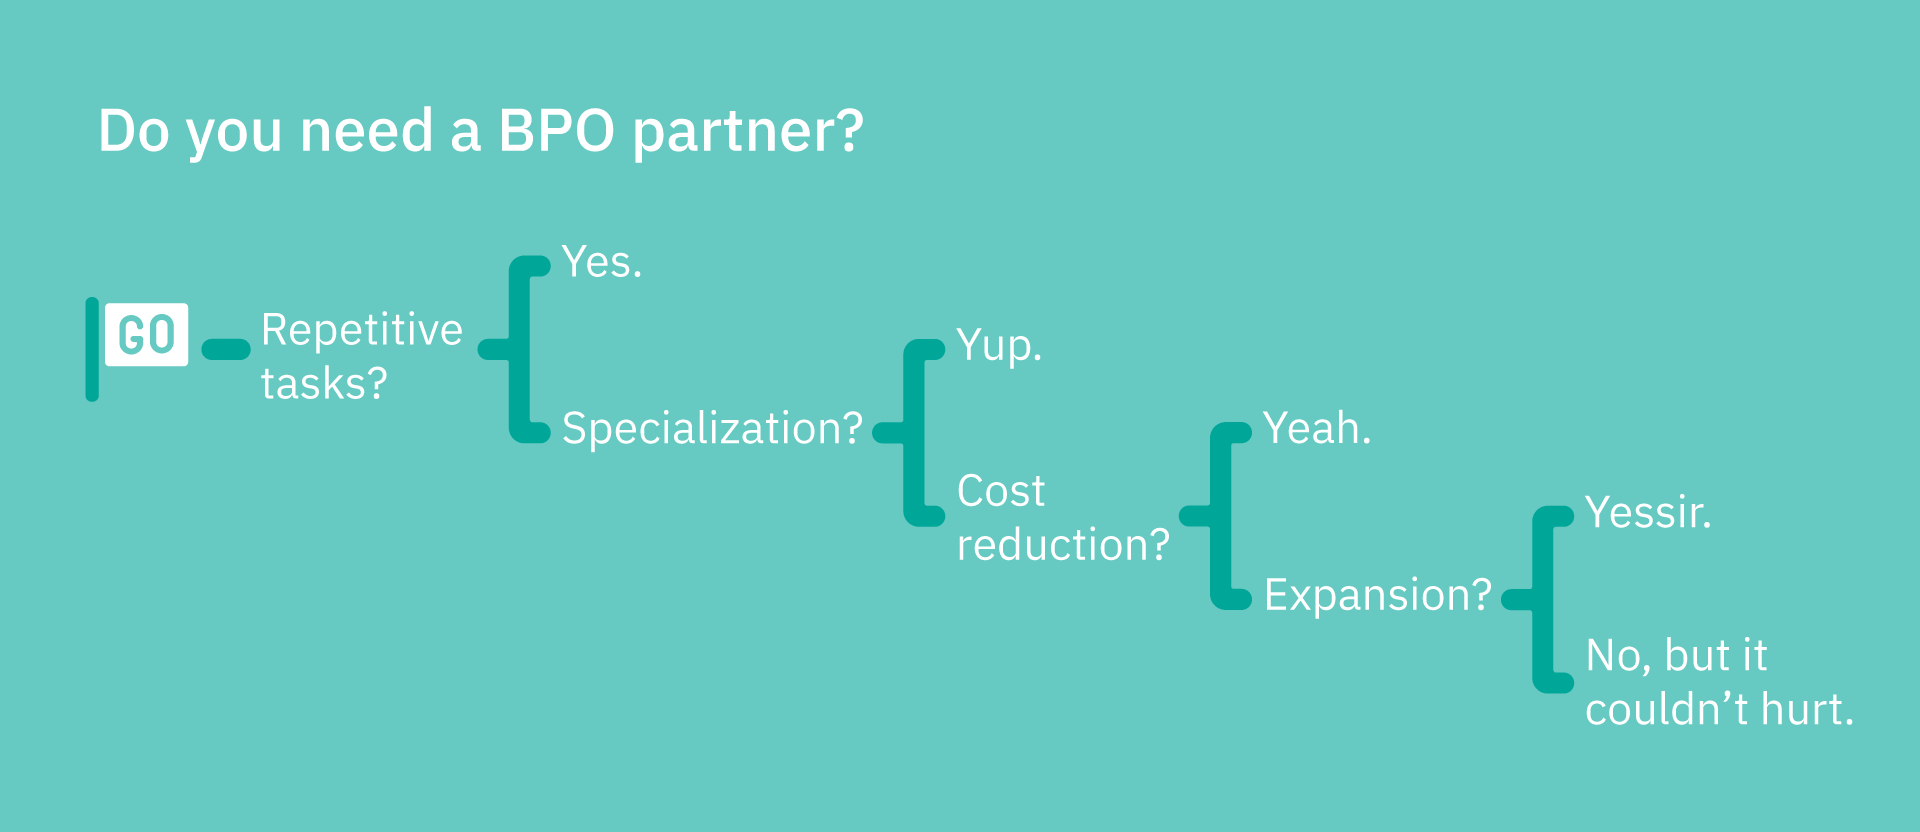 Do you need a BPO partner?